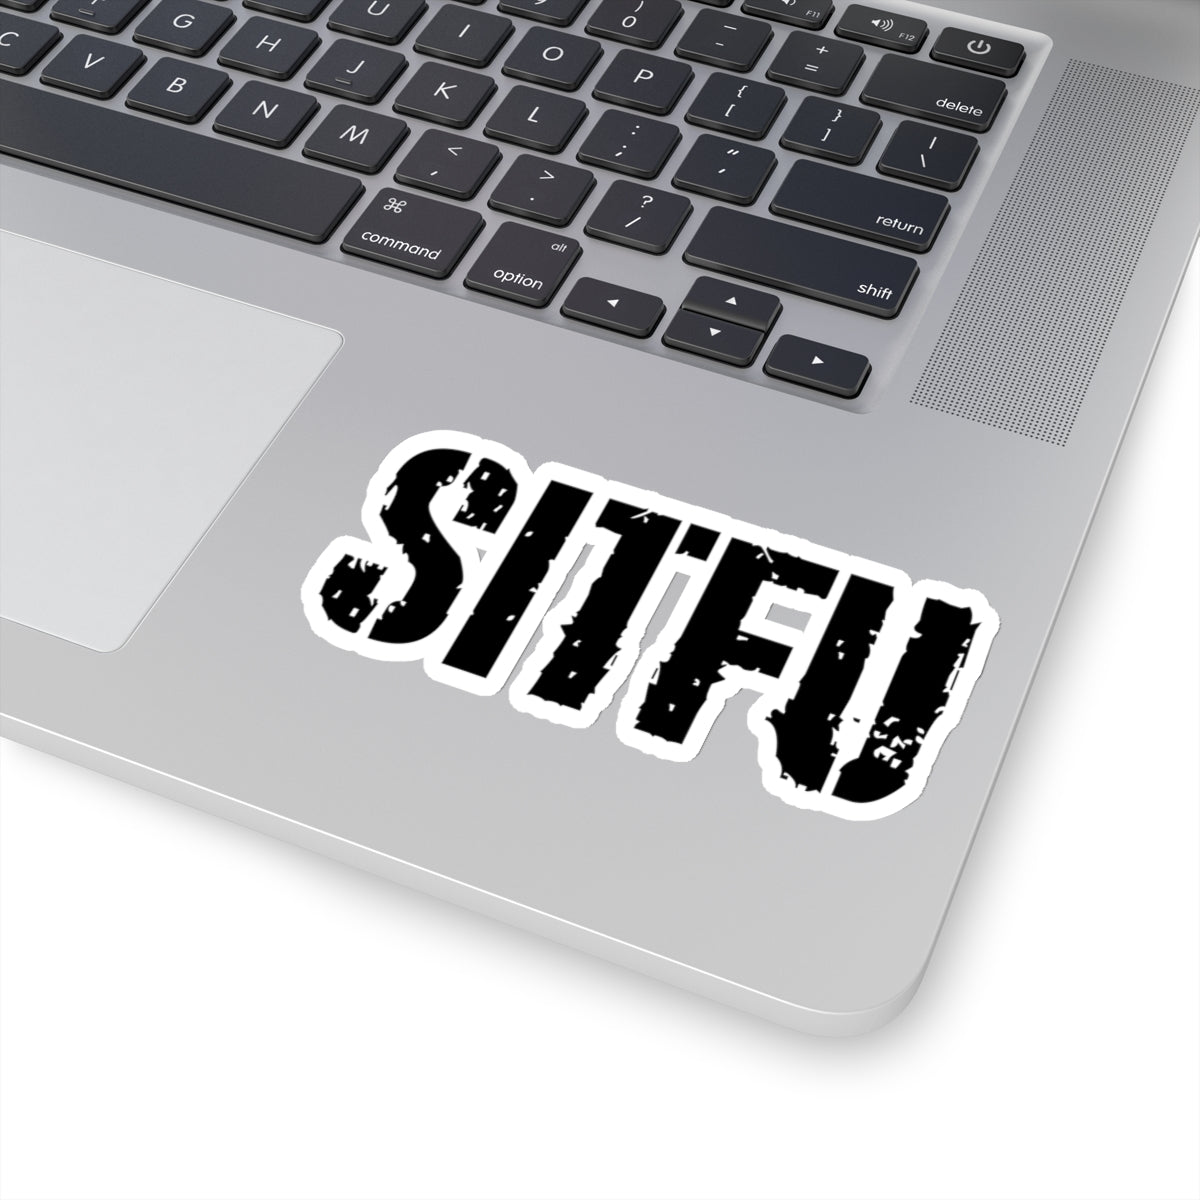 SITFU - Kiss-Cut Stickers